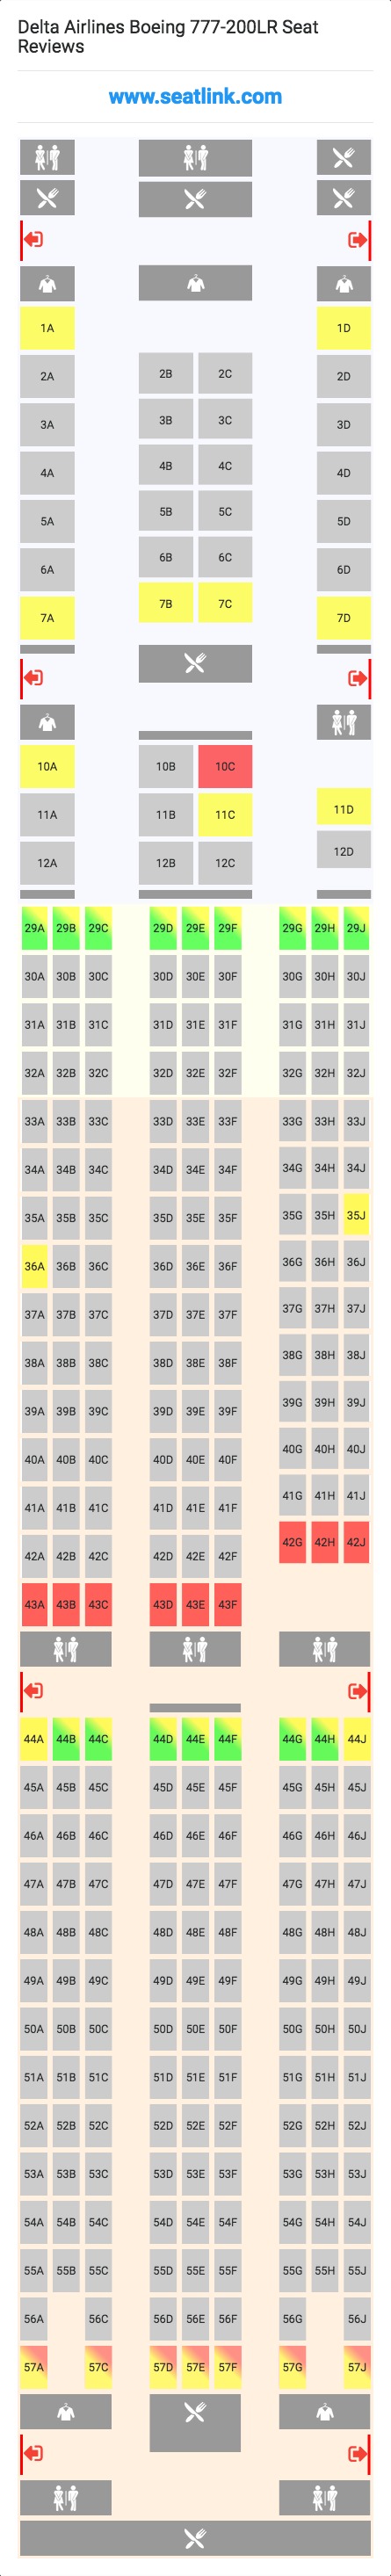 Delta Flight 86 Seating Chart